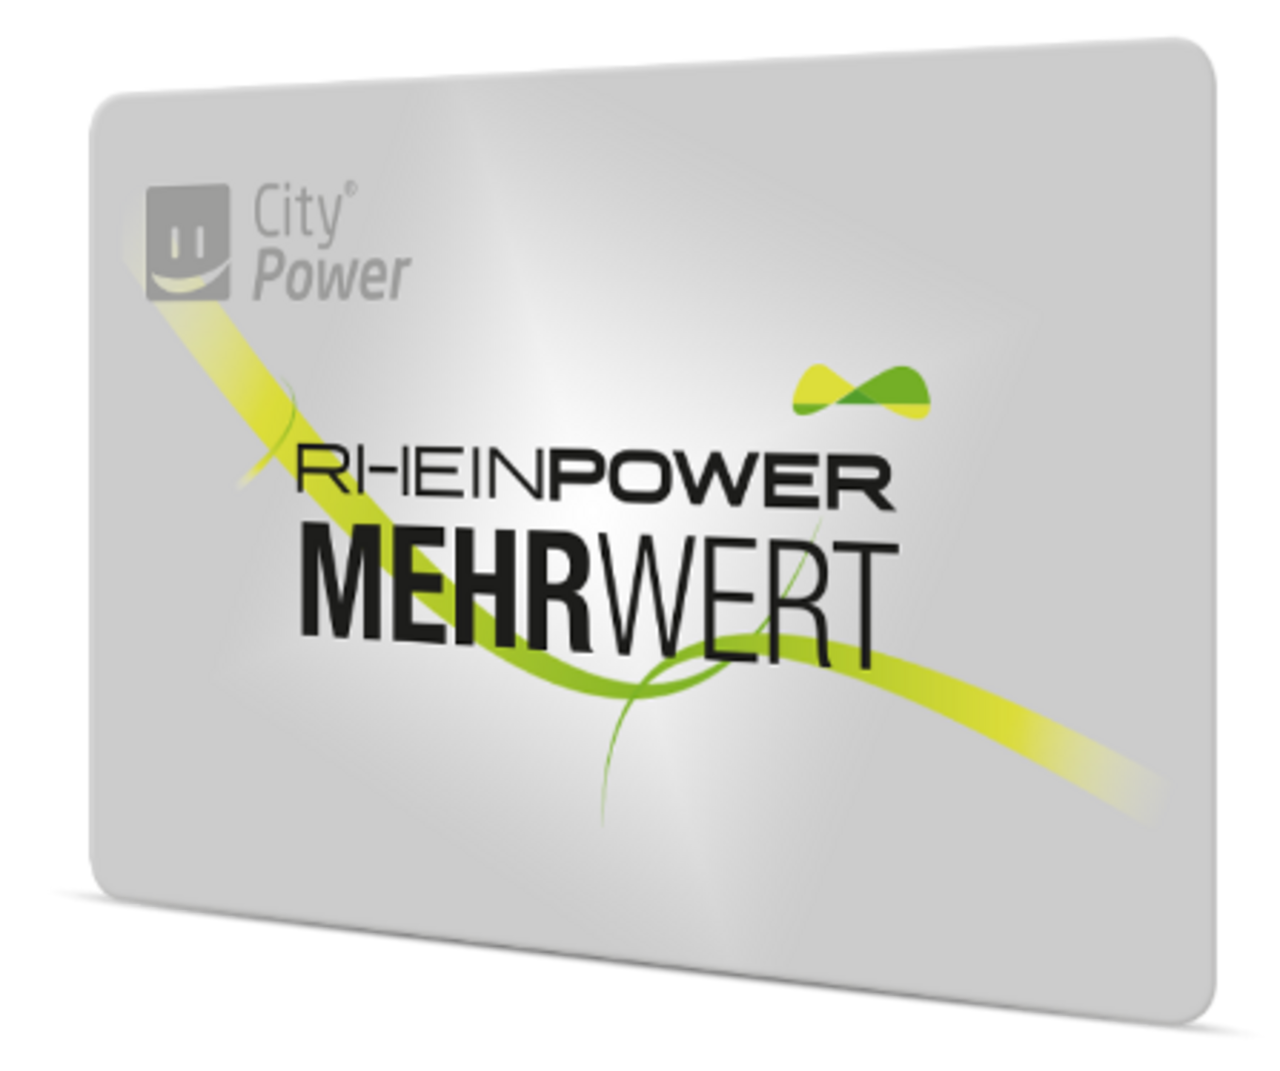 Bild der Kundenkarte Rheinpower